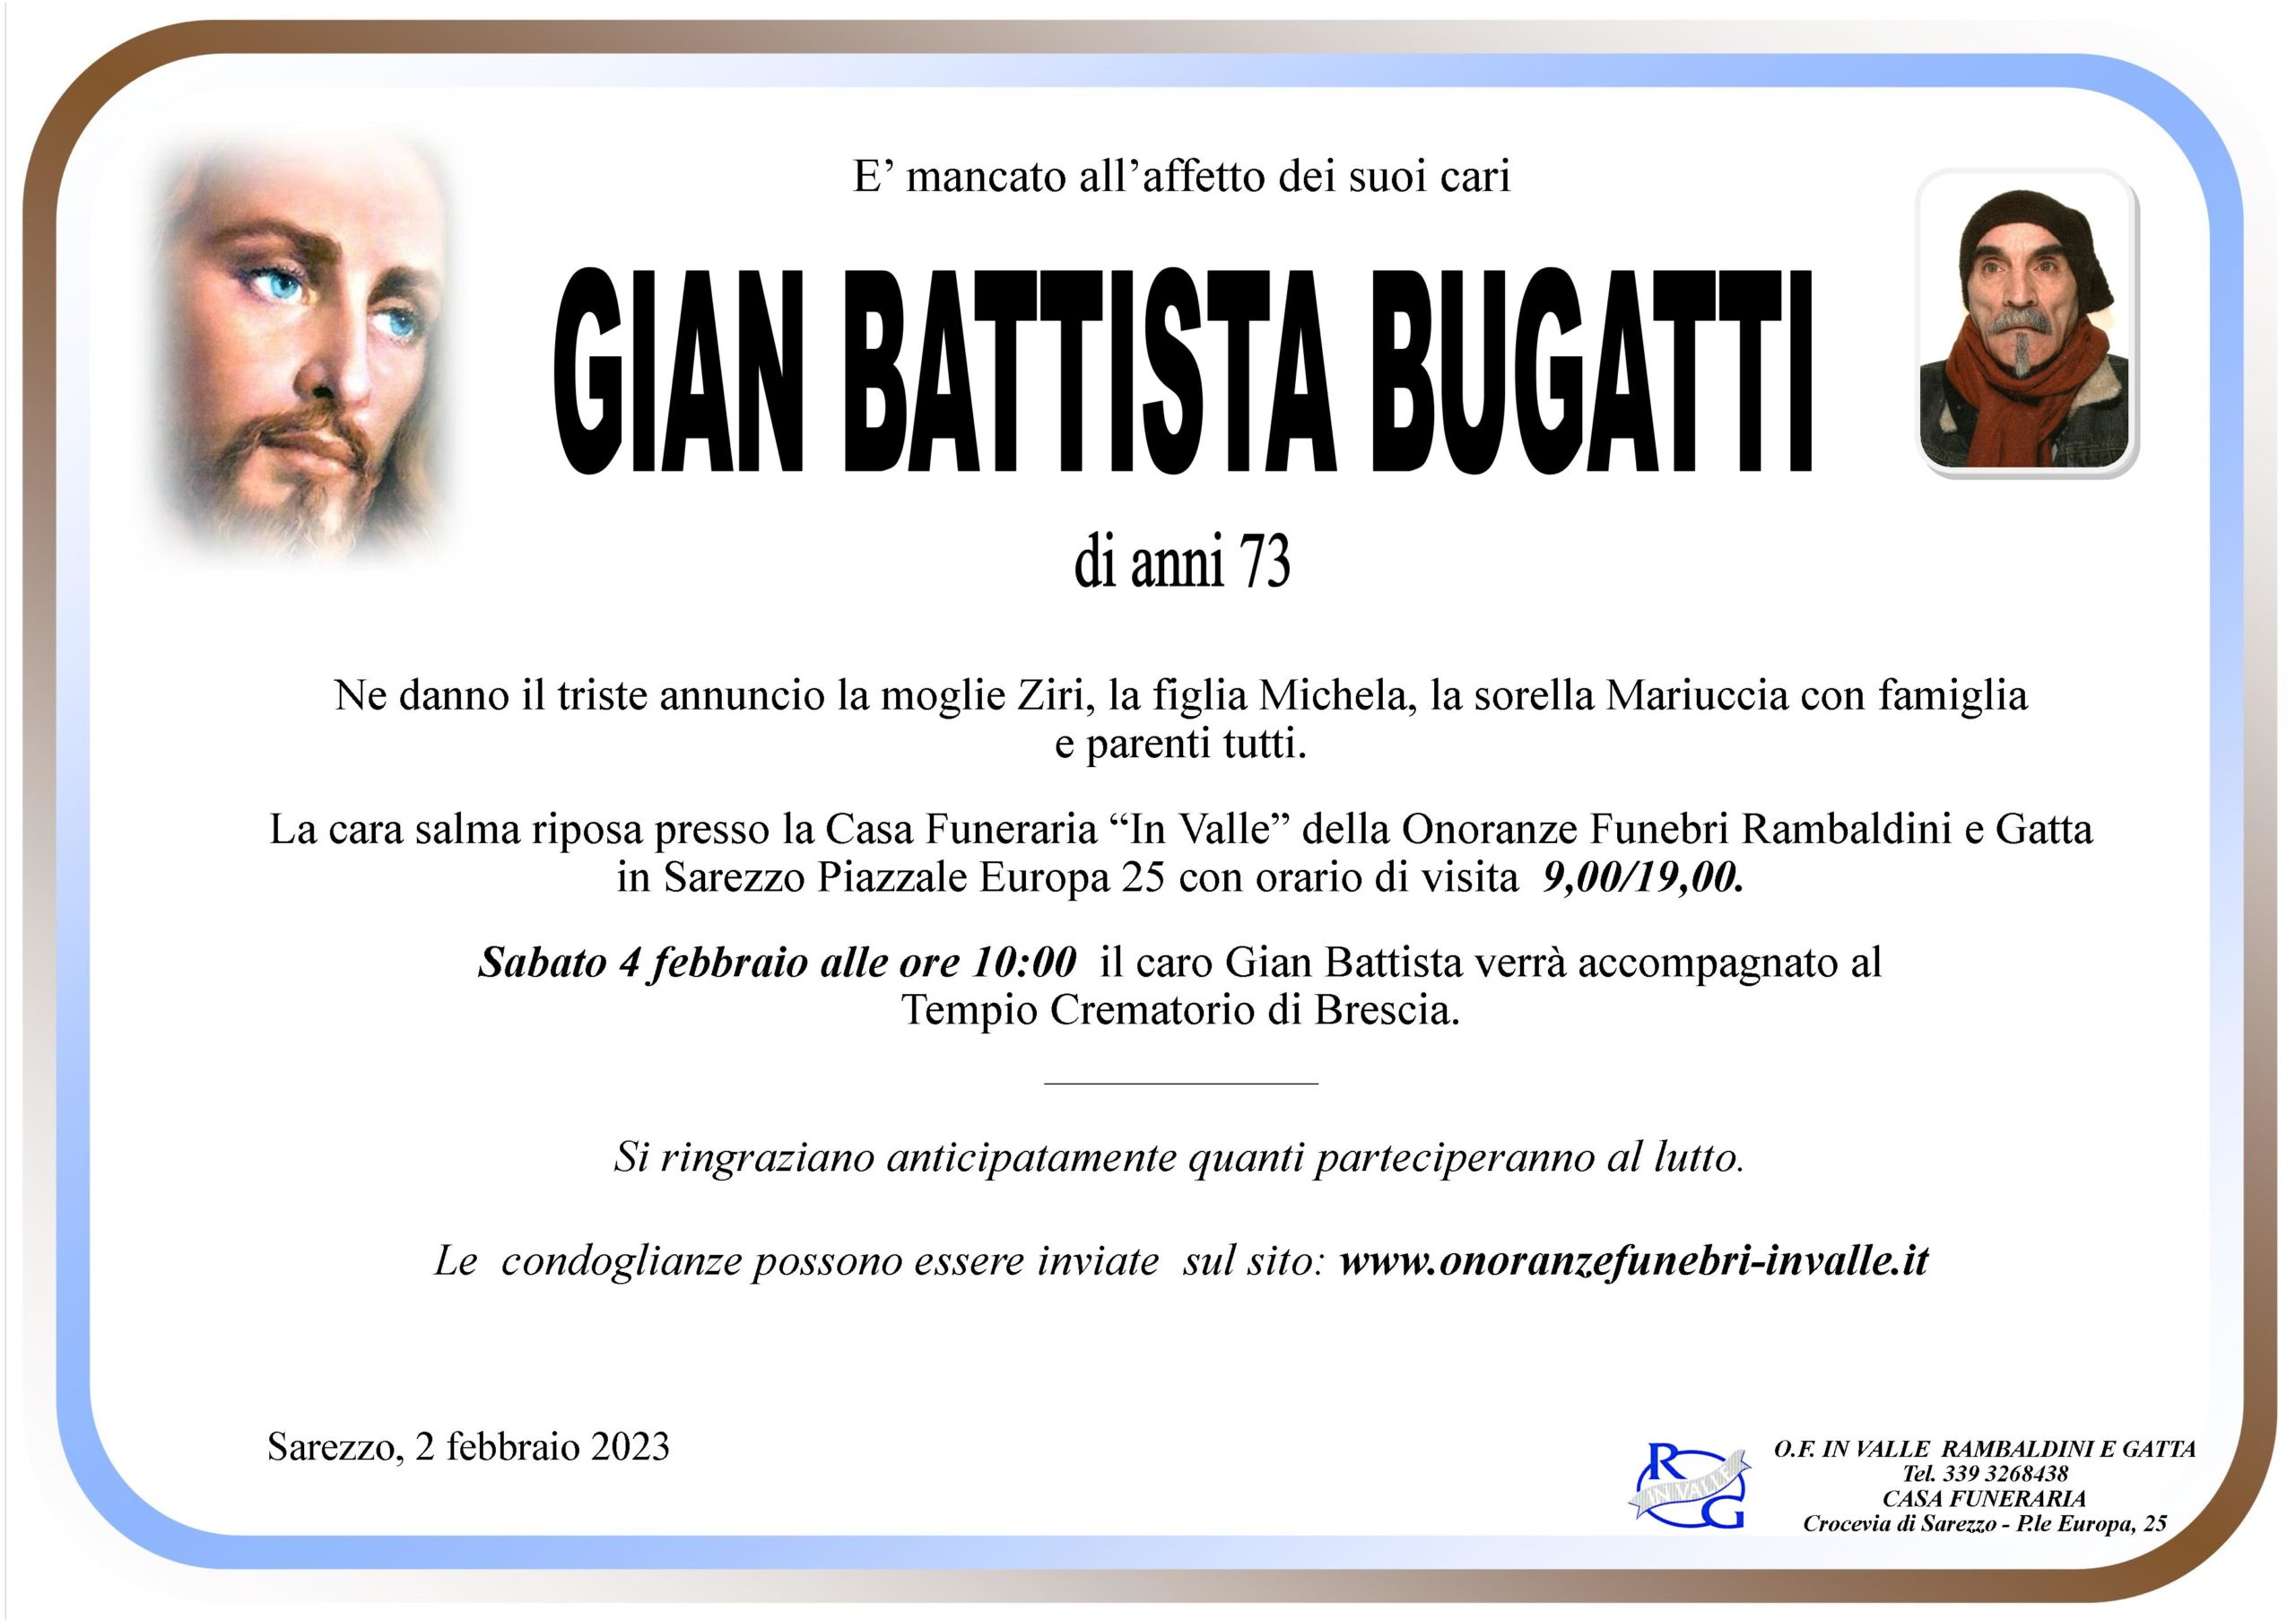 Al momento stai visualizzando Bugatti Gian Battista